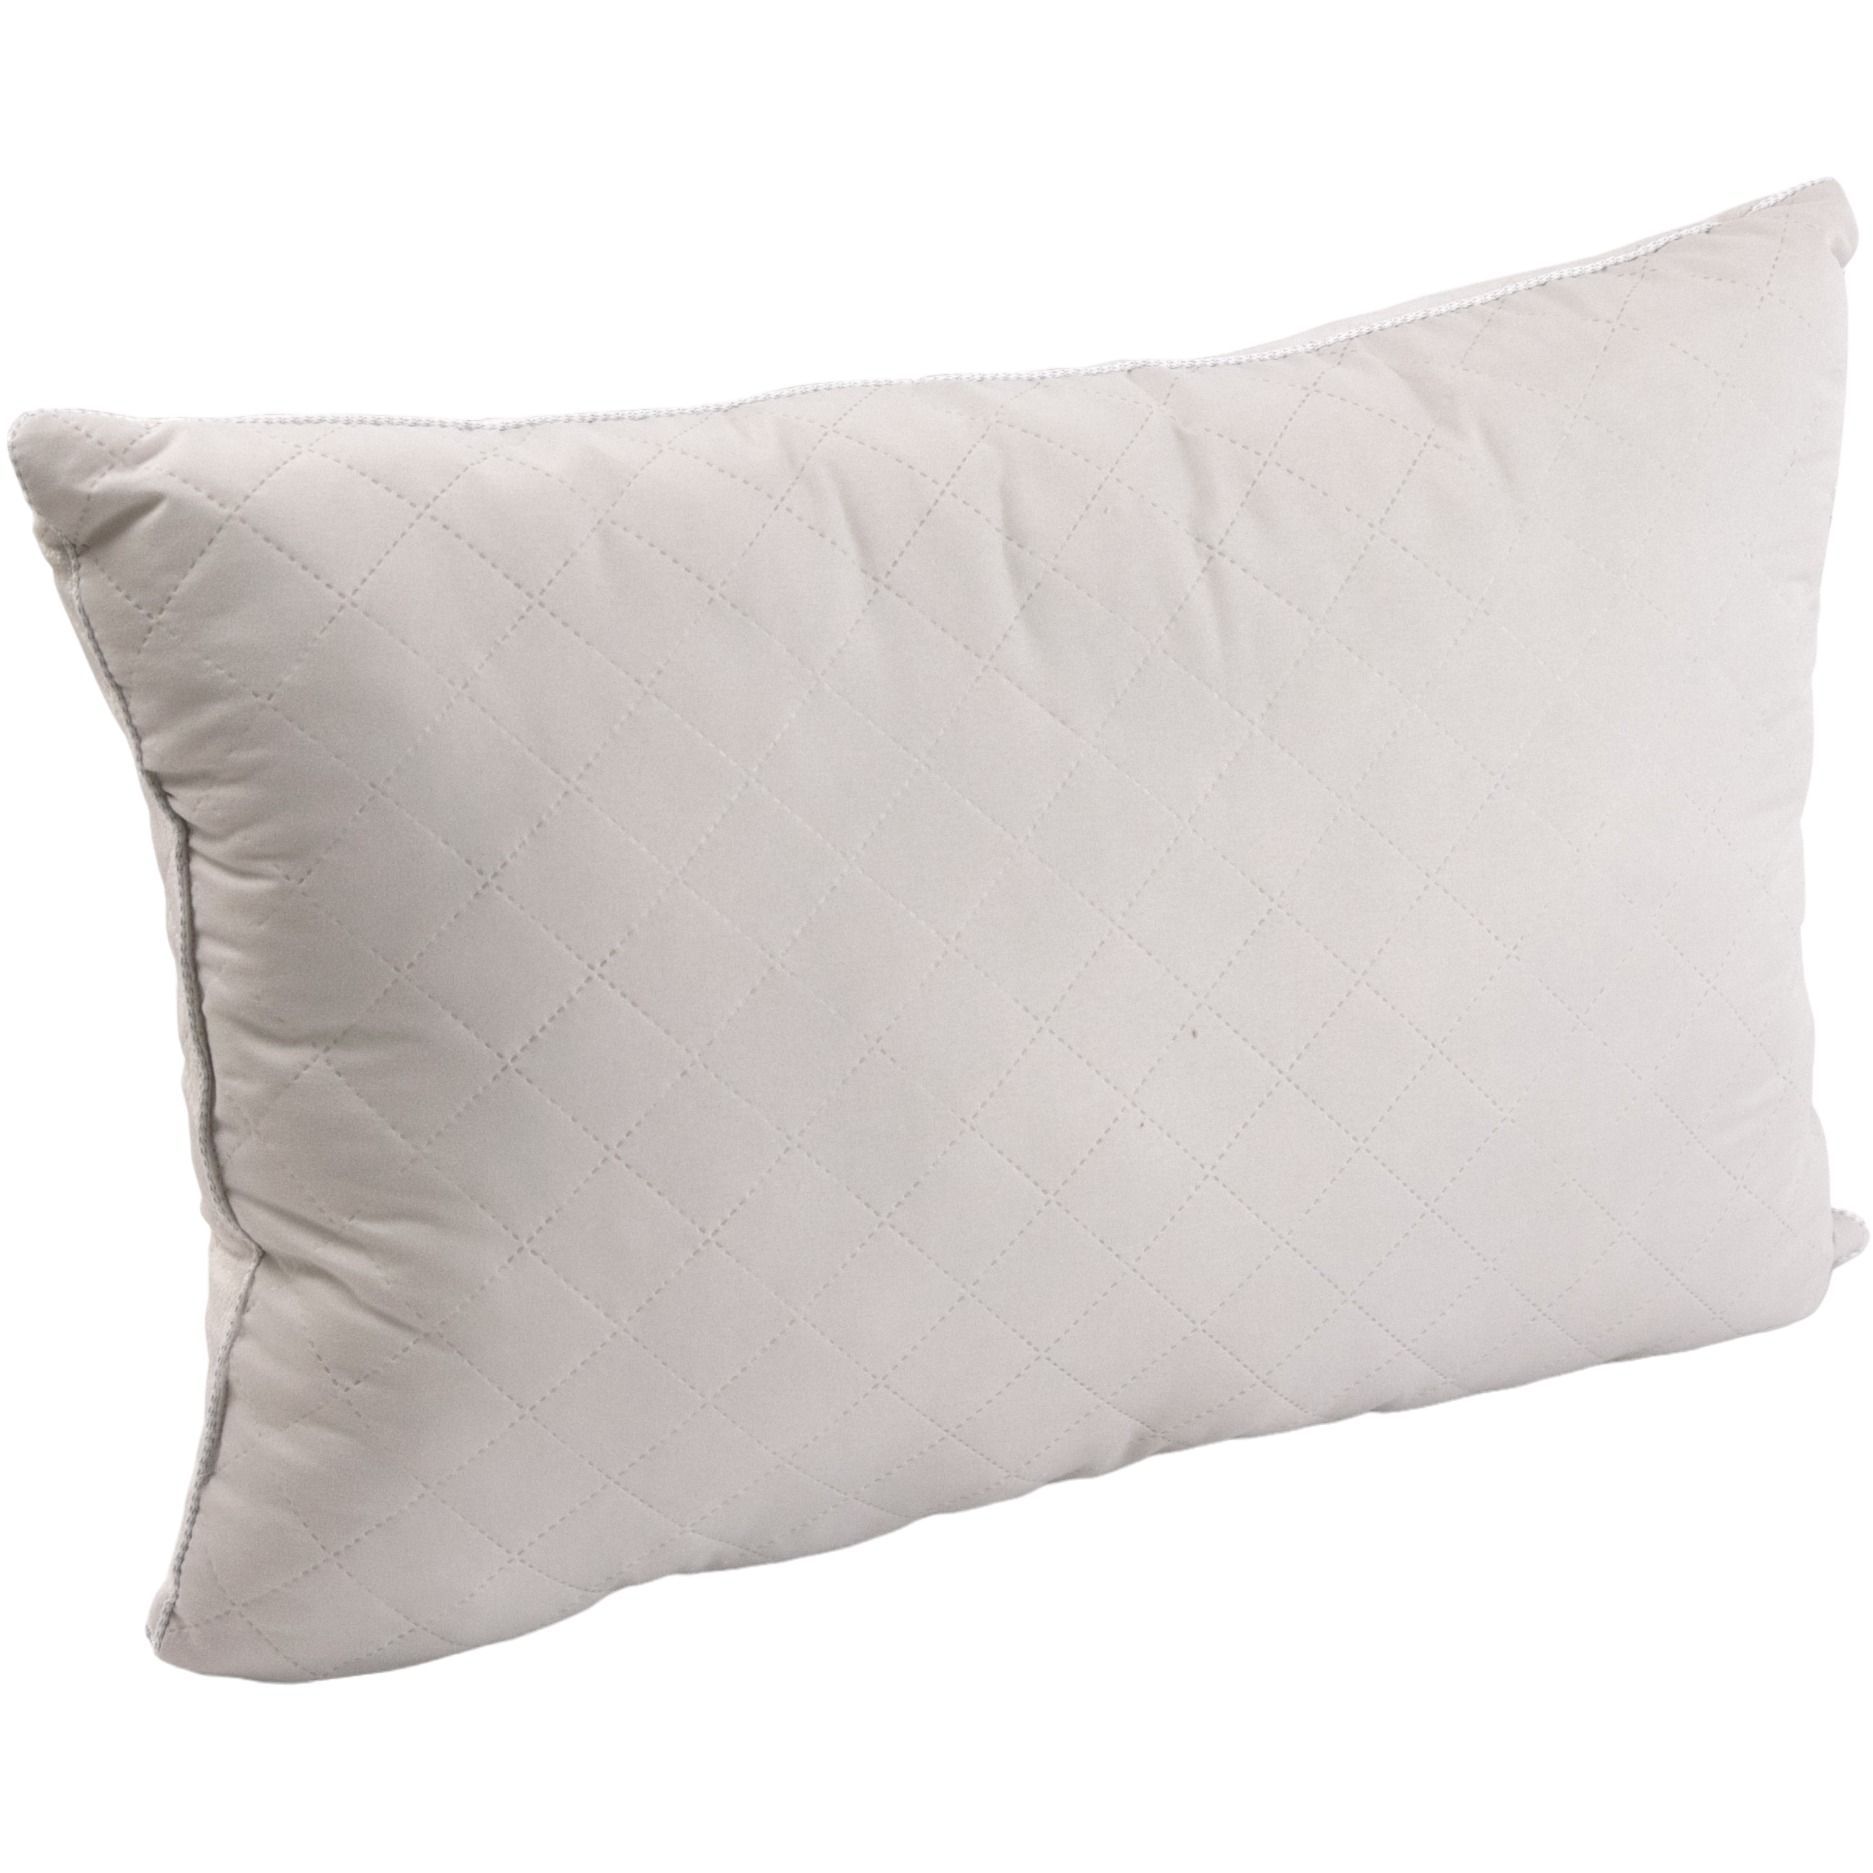 Набор силиконовый Руно Soft Pearl, бежевый: одеяло, 220х200 см + подушка 2 шт., 50х70 см (925.55_Soft Pearl) - фото 2